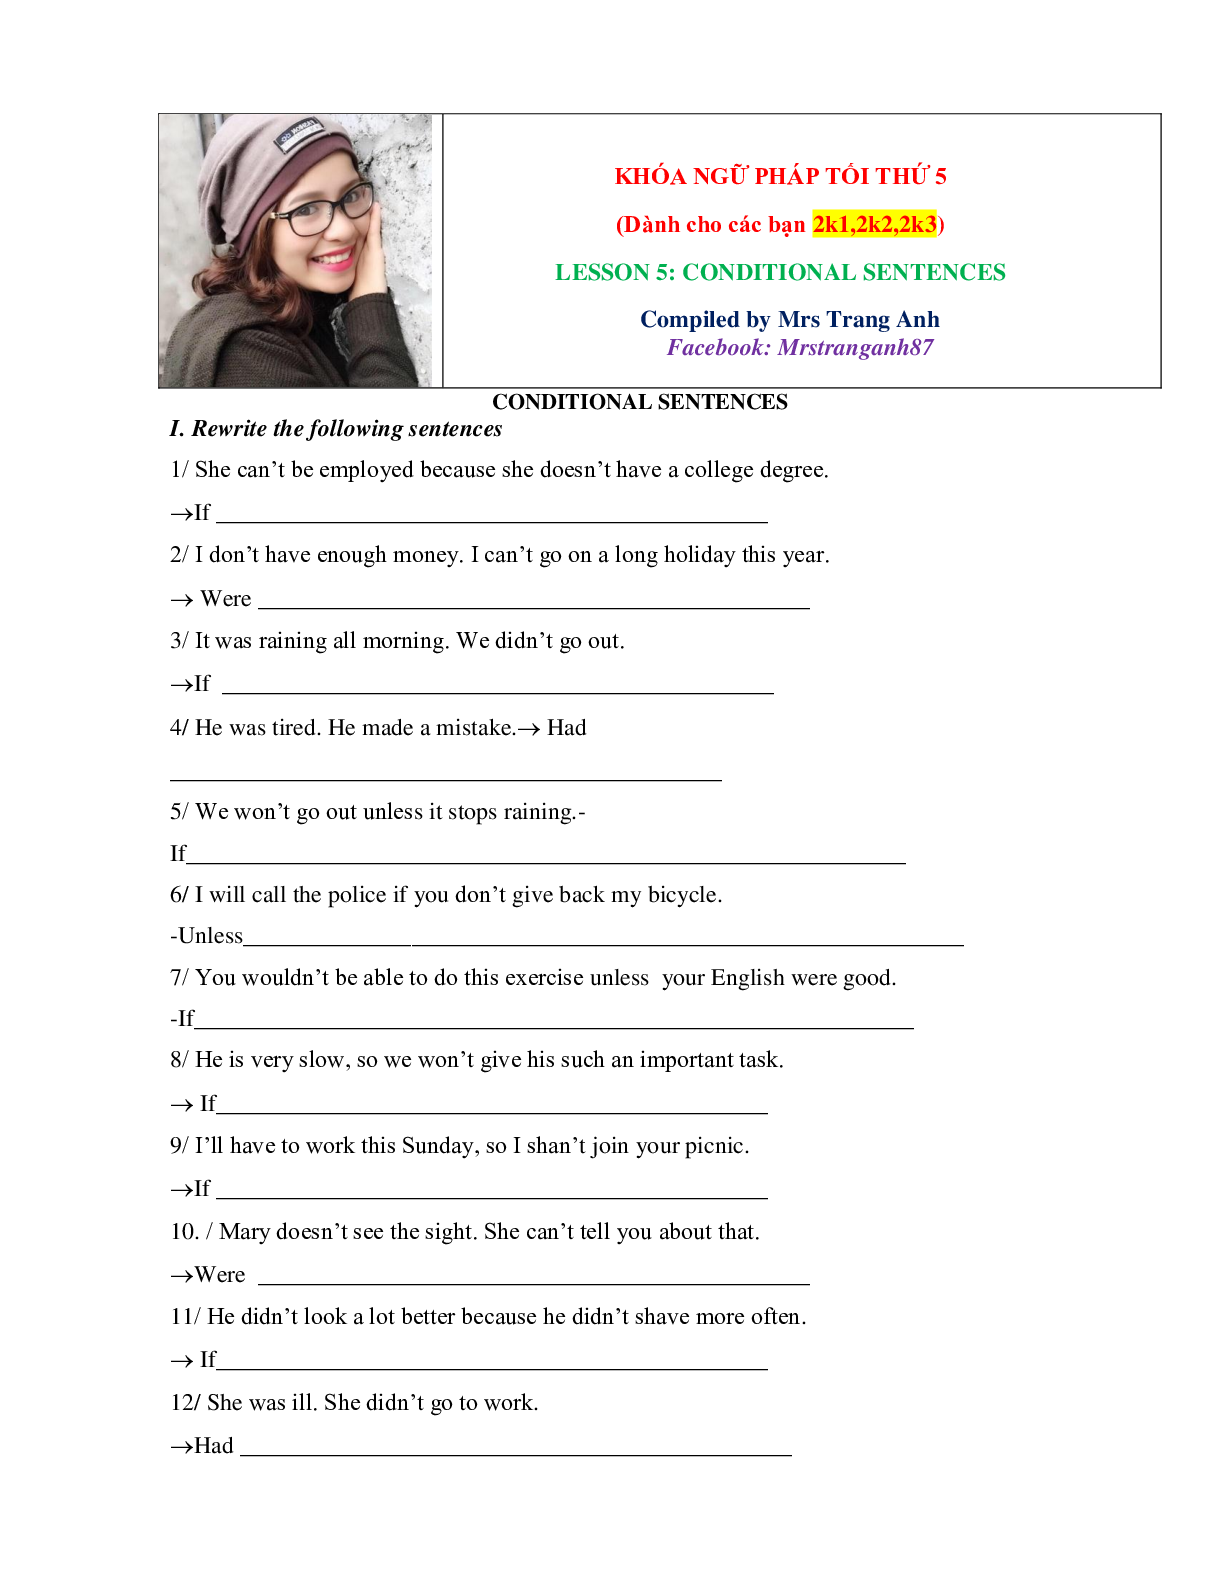 Chuyên đề: Câu điều kiện môn Tiếng Anh lớp 12 (trang 1)